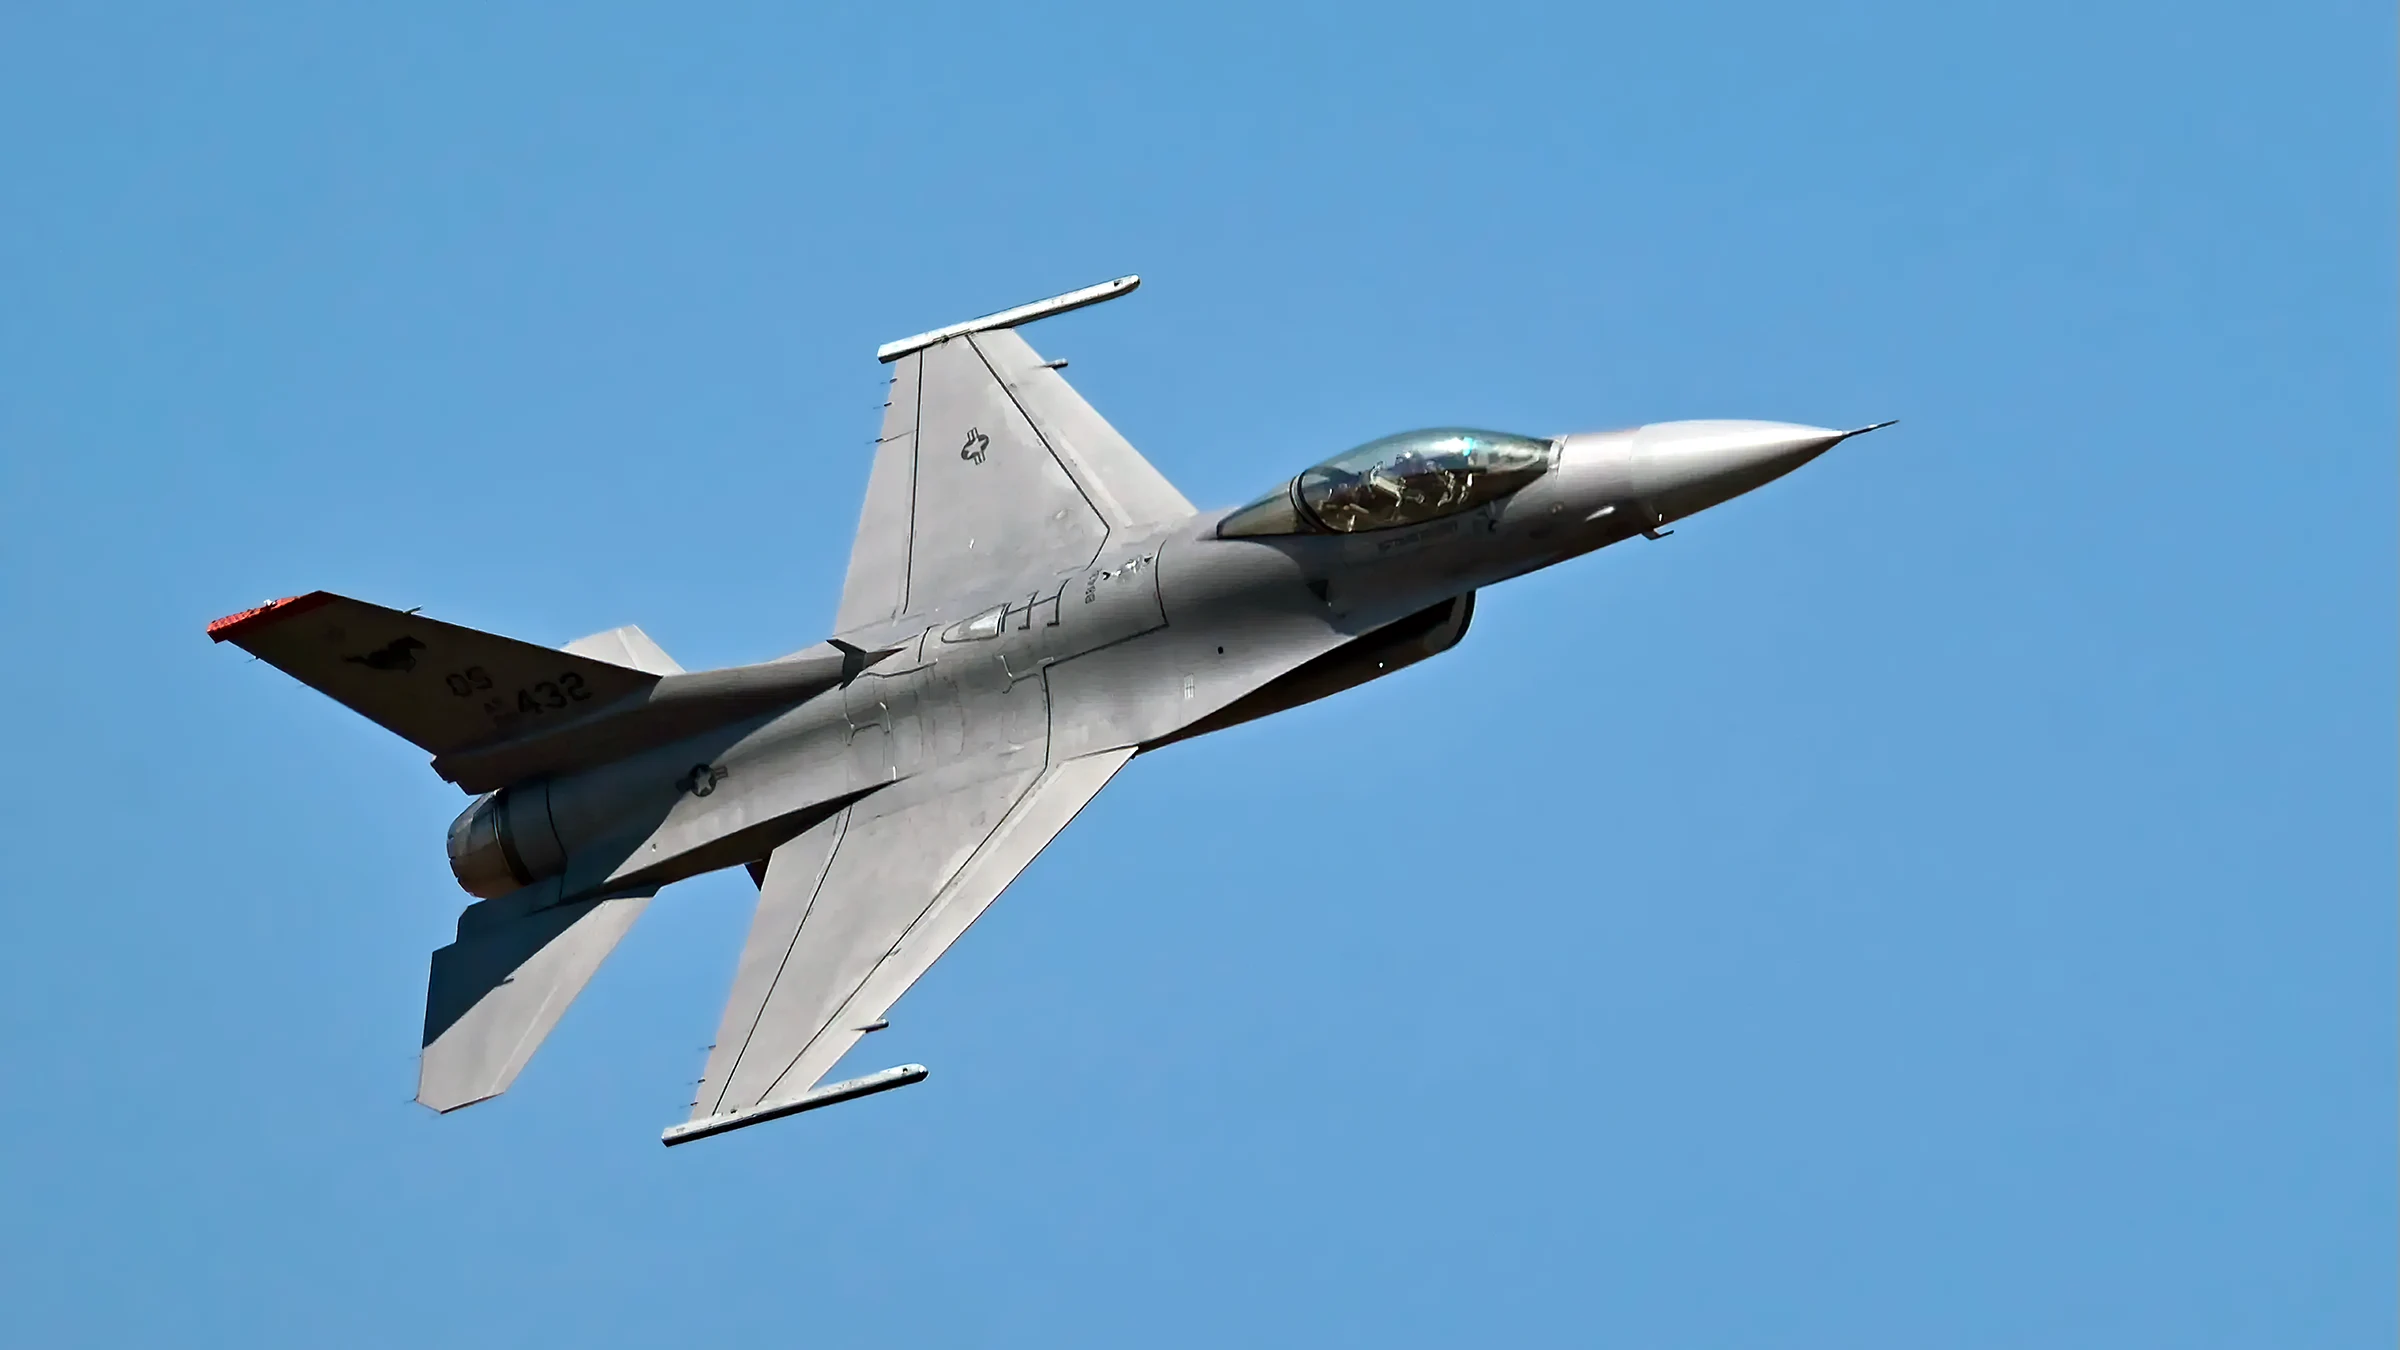 El F-16 es el caza más dominante de su generación